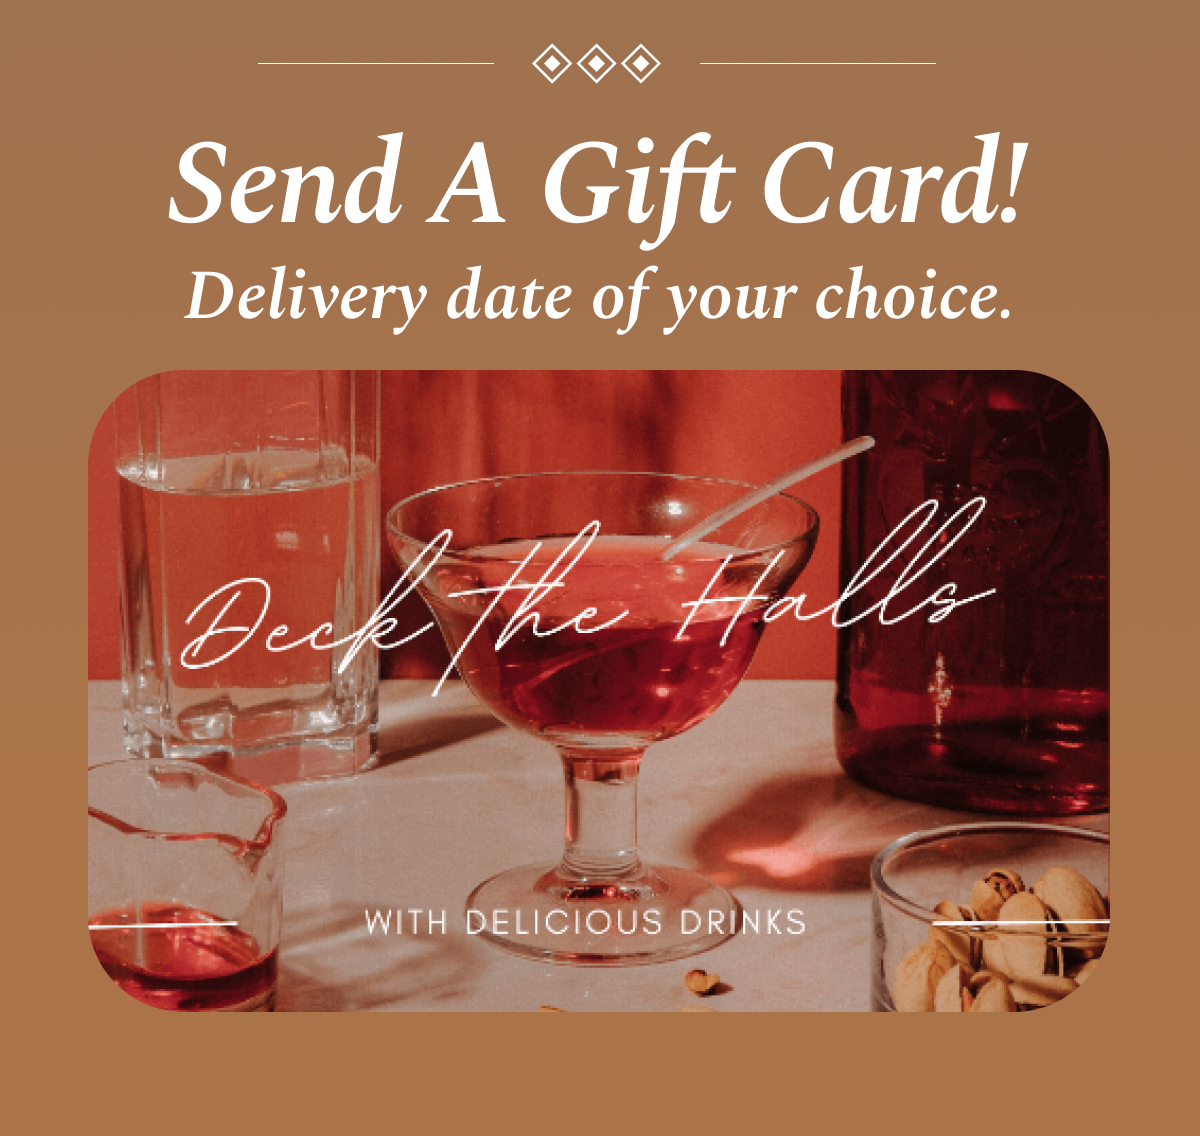 Send A Gift Card!